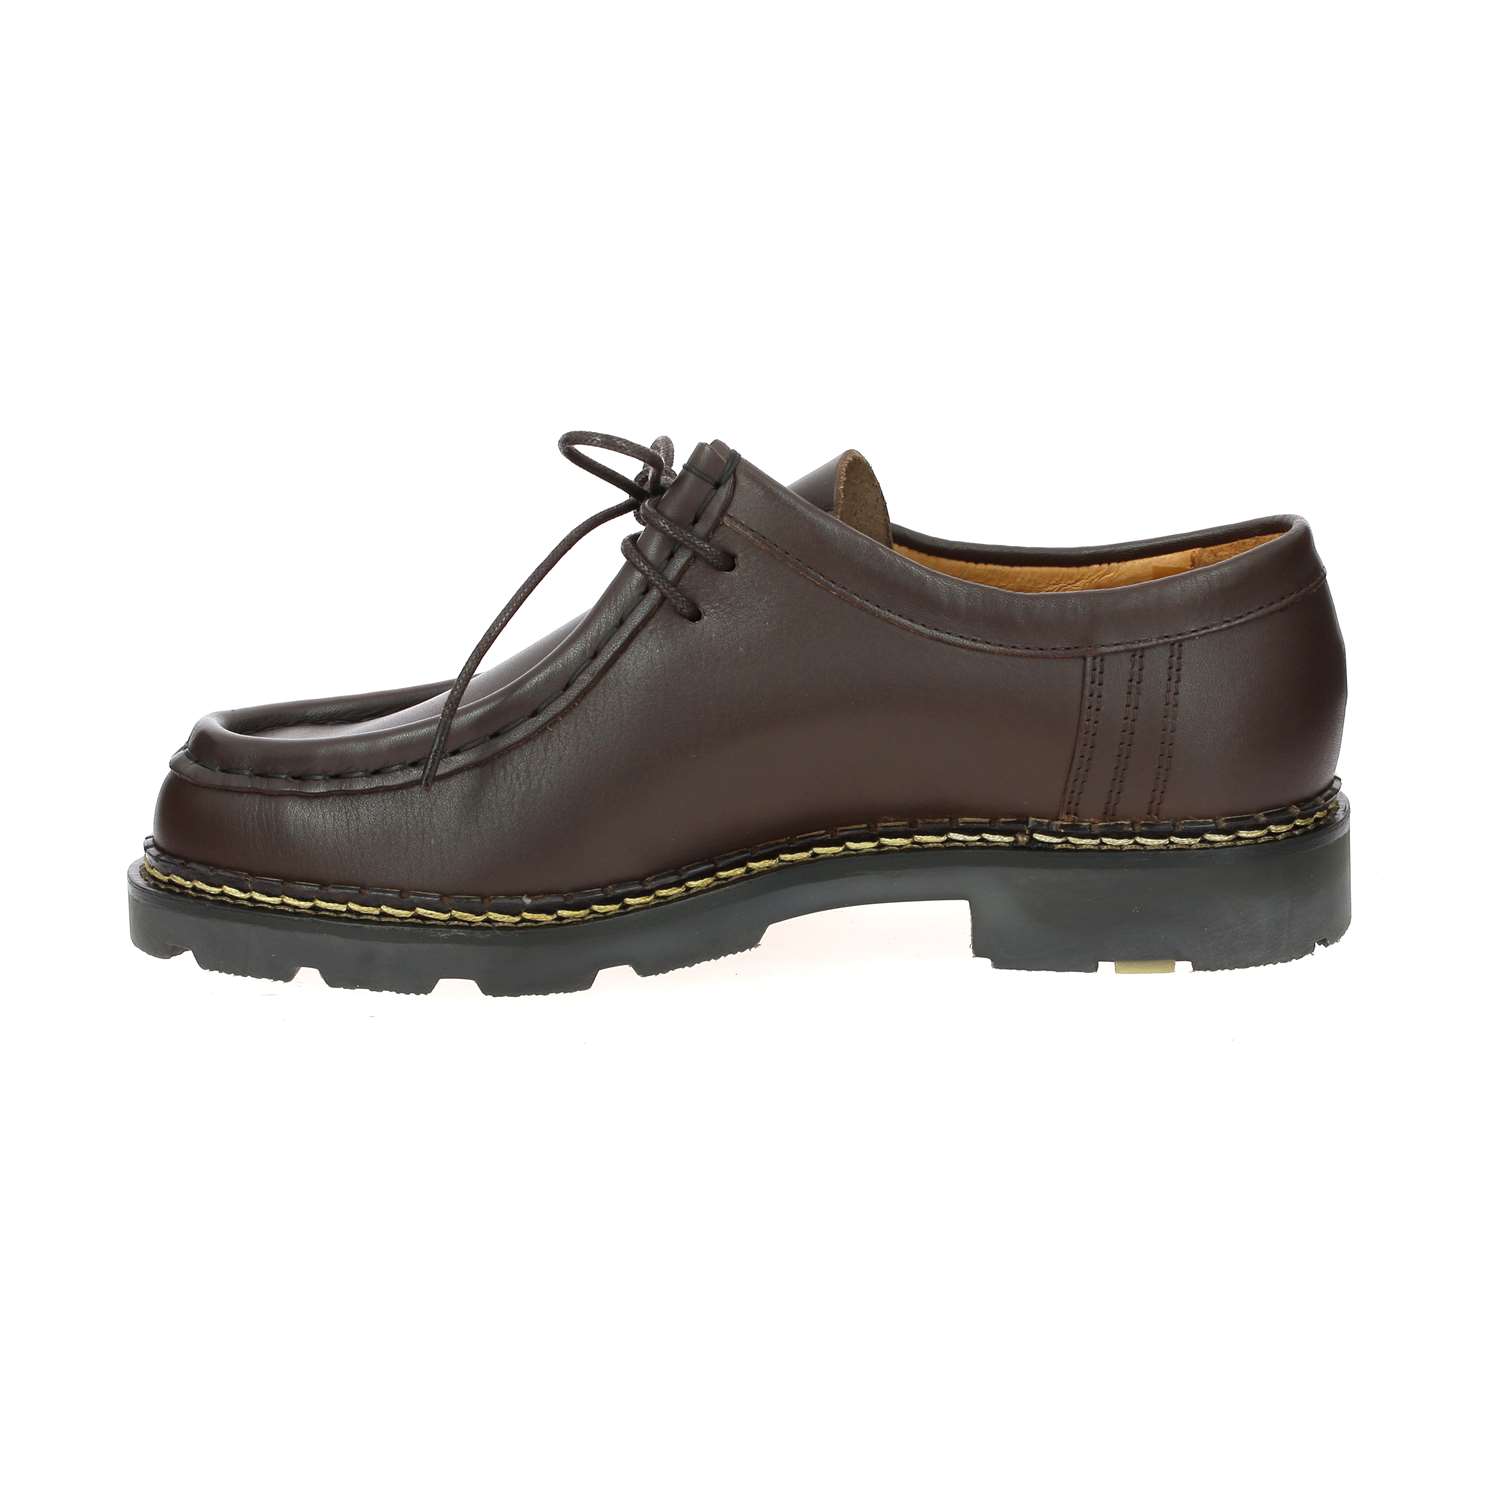 5 - MACHO - CHRISTIAN PELLET - Chaussures à lacets - Cuir, Caoutchouc